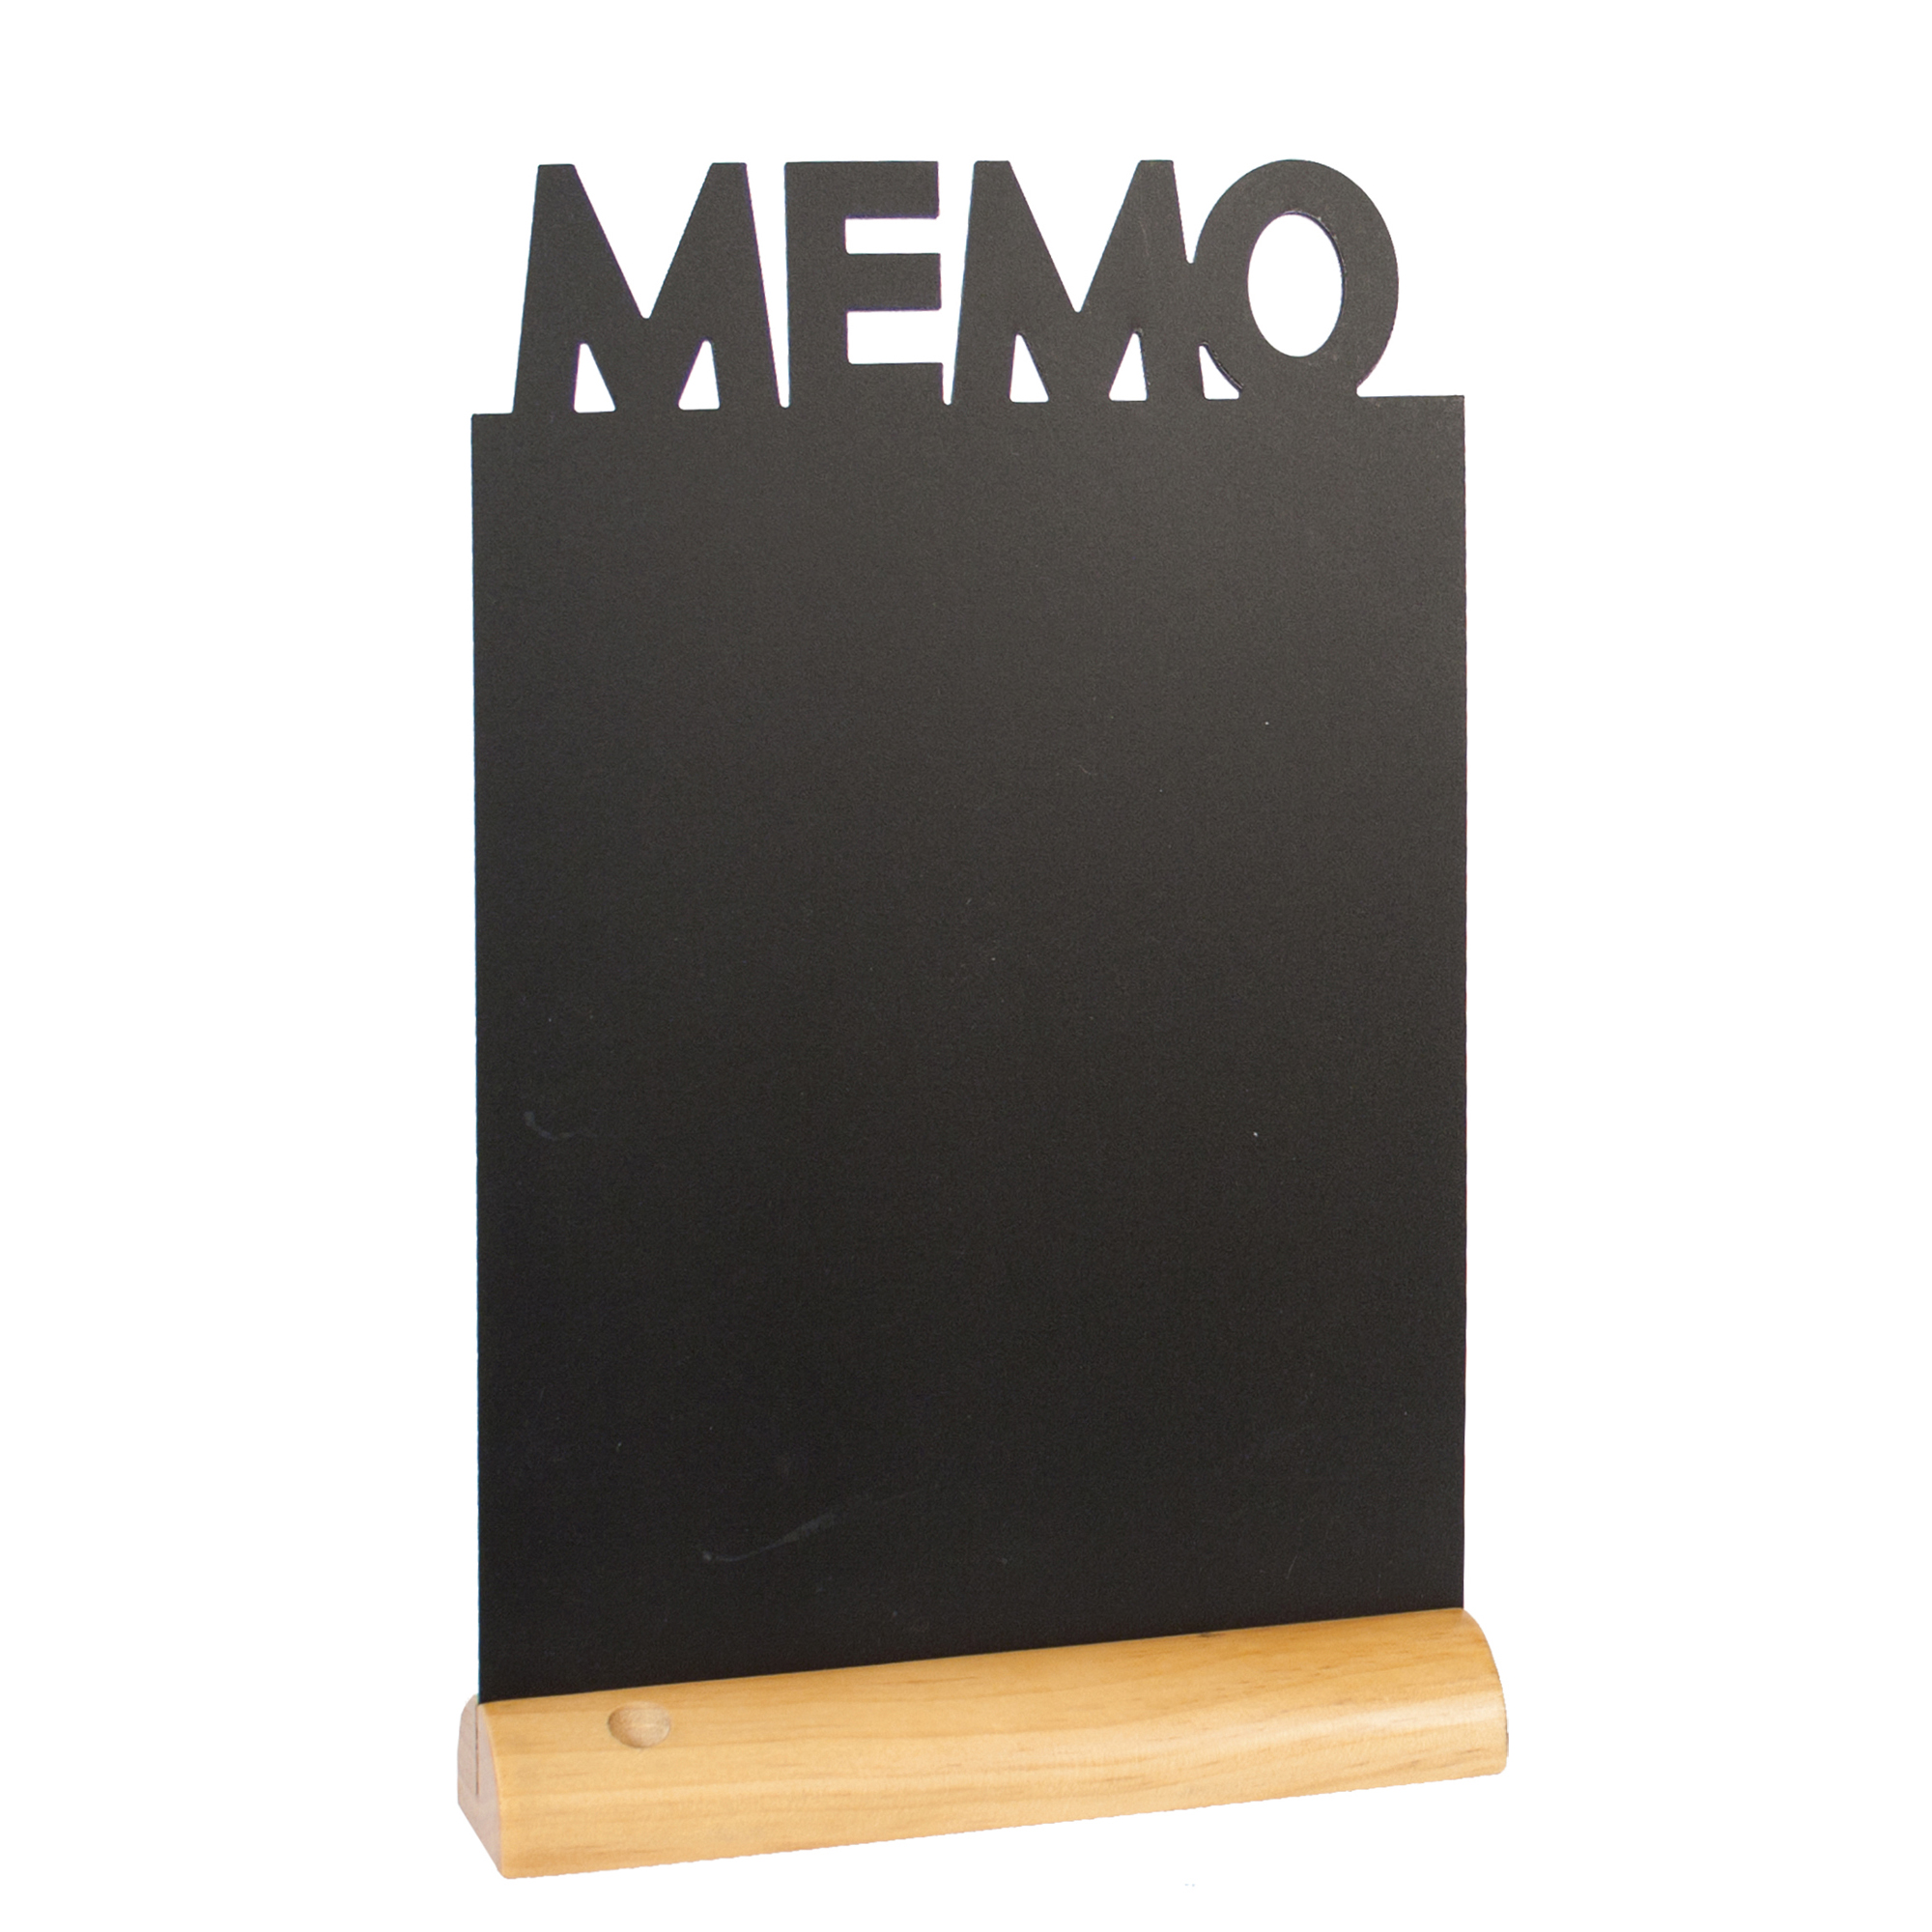 Lavagna da tavolo Silhouette - 34,5x21 cm - forma memo - nero - Securit